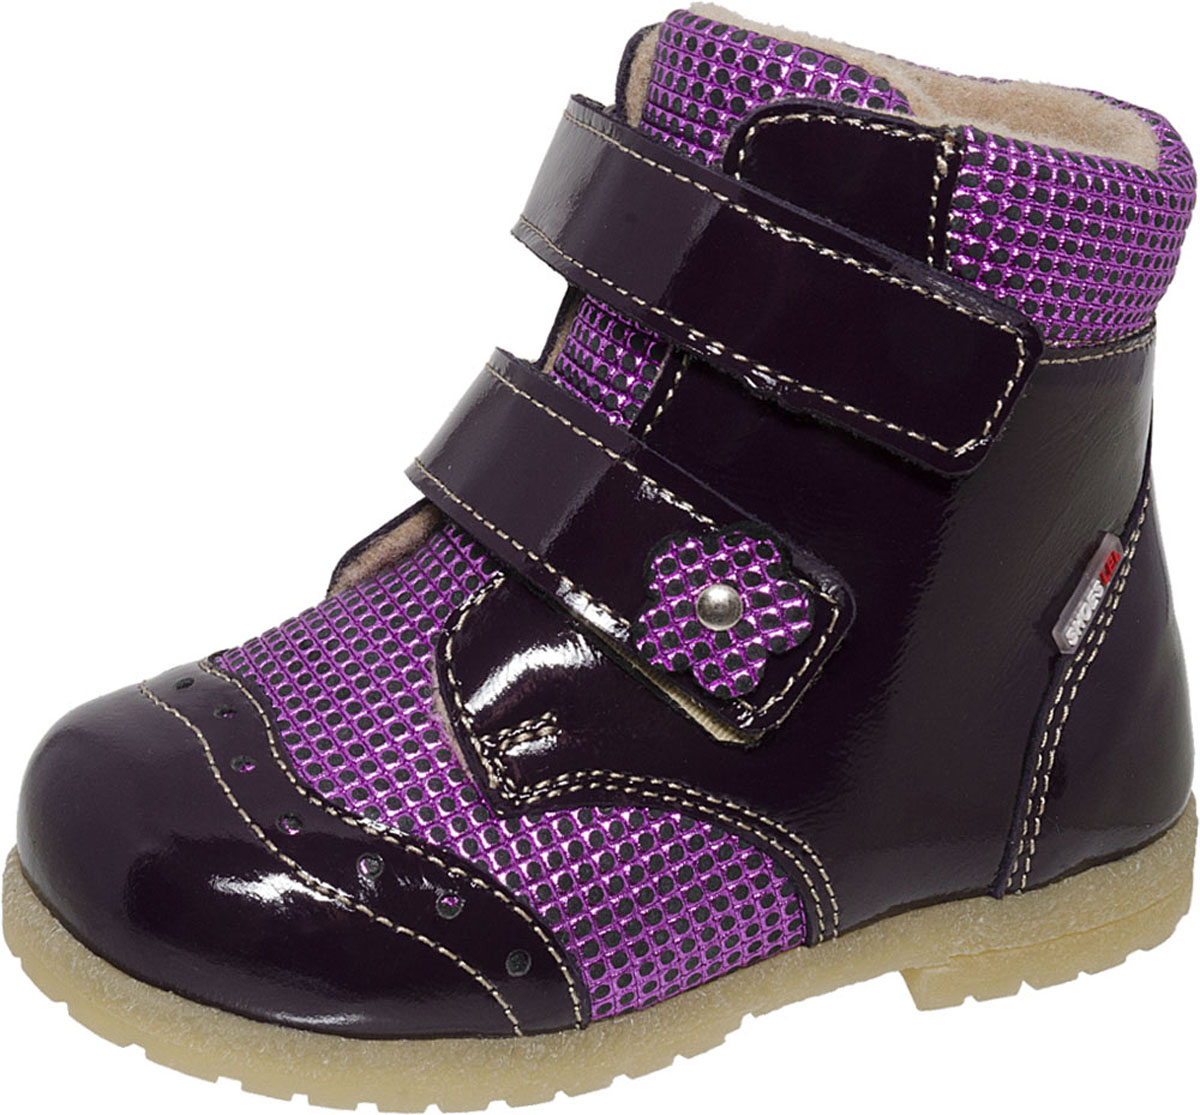 Ботинки для девочки Лель, цвет: фиолетовый. 2-1005. Размер 20